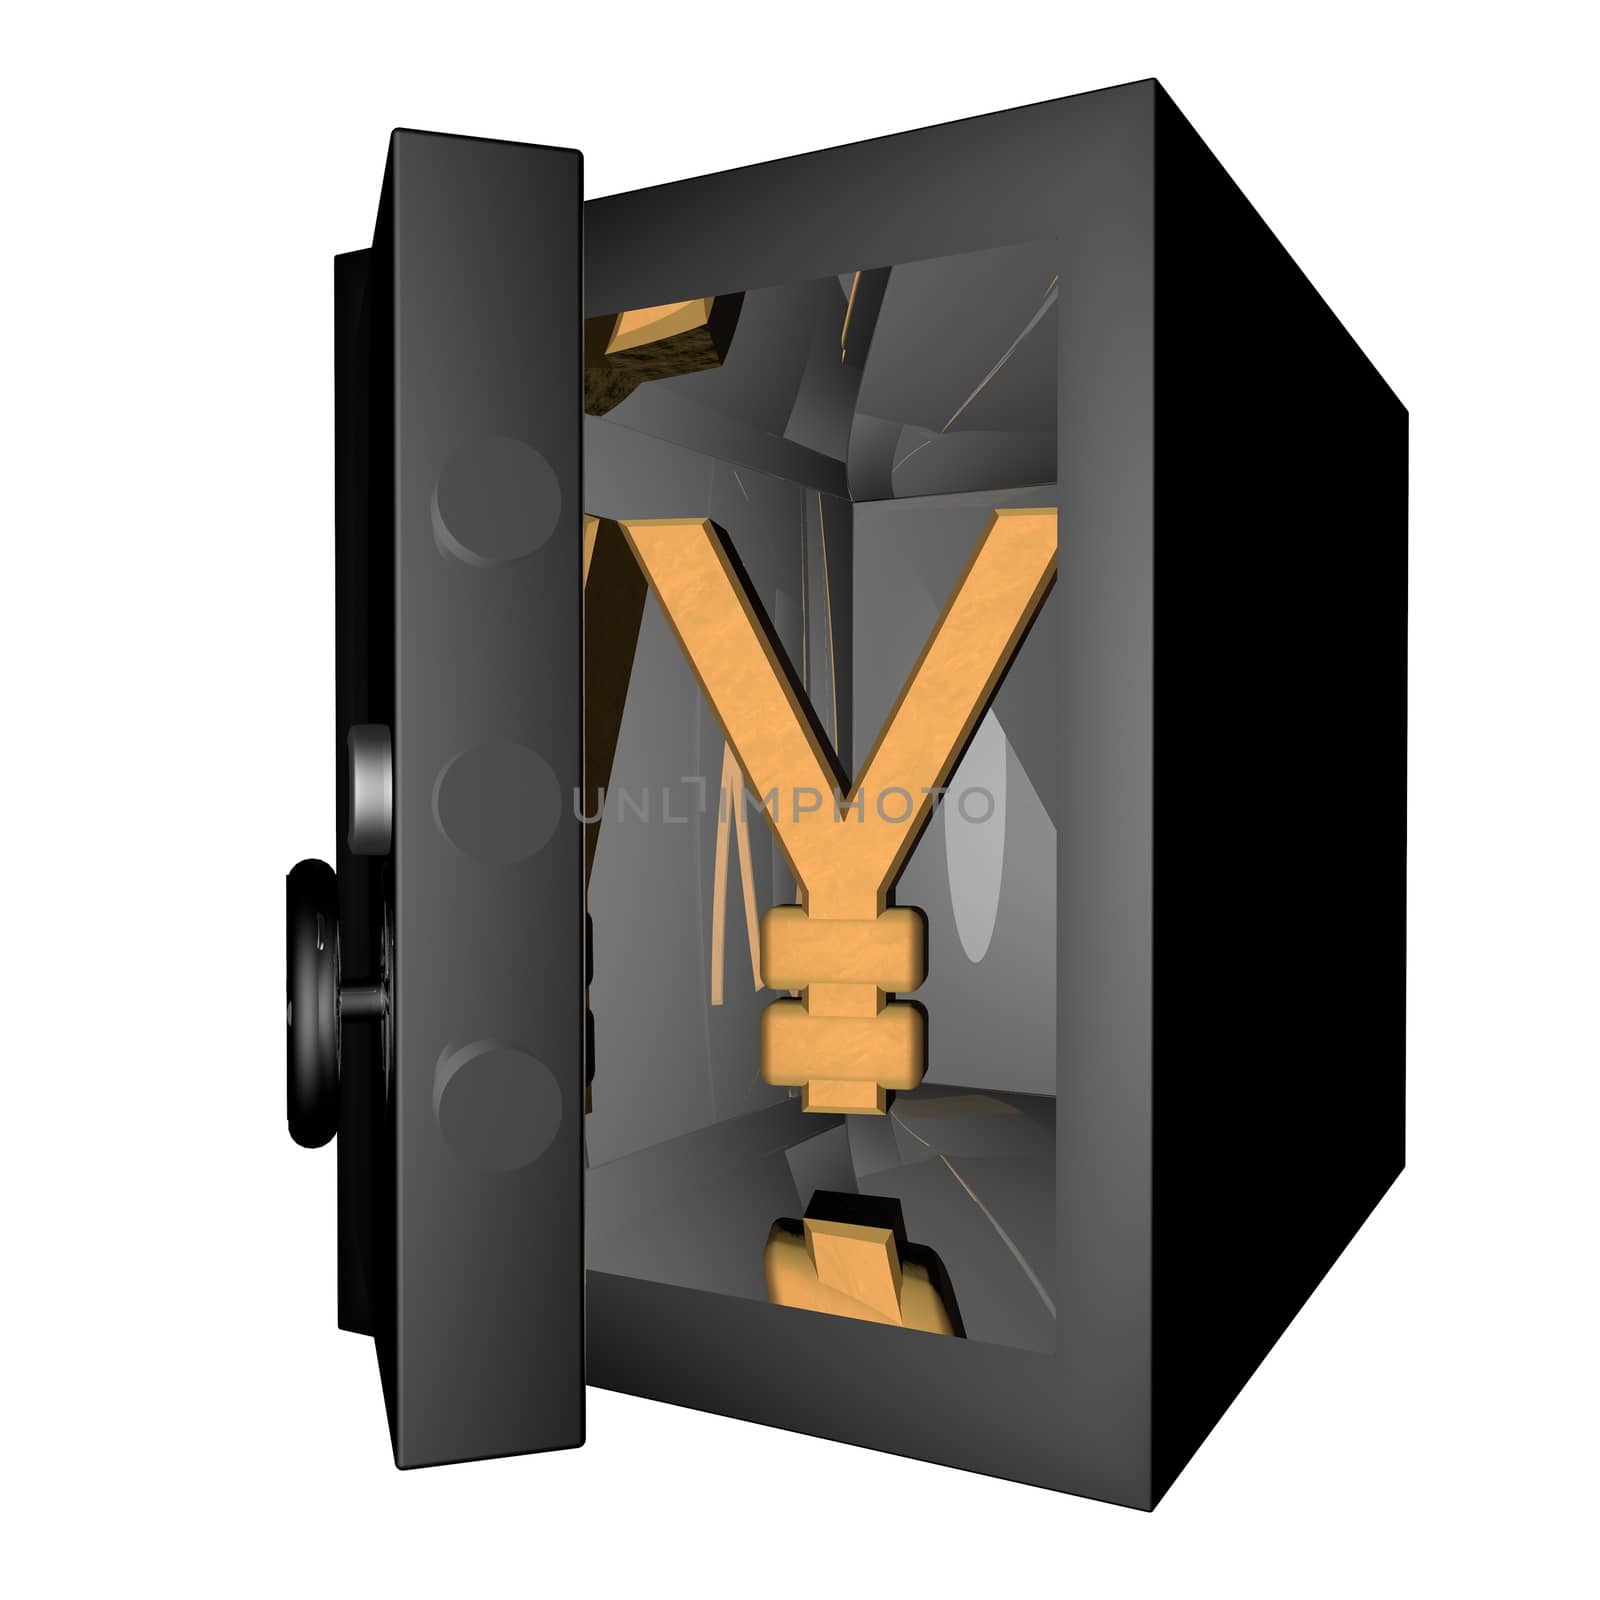 Yen in Vault by Koufax73